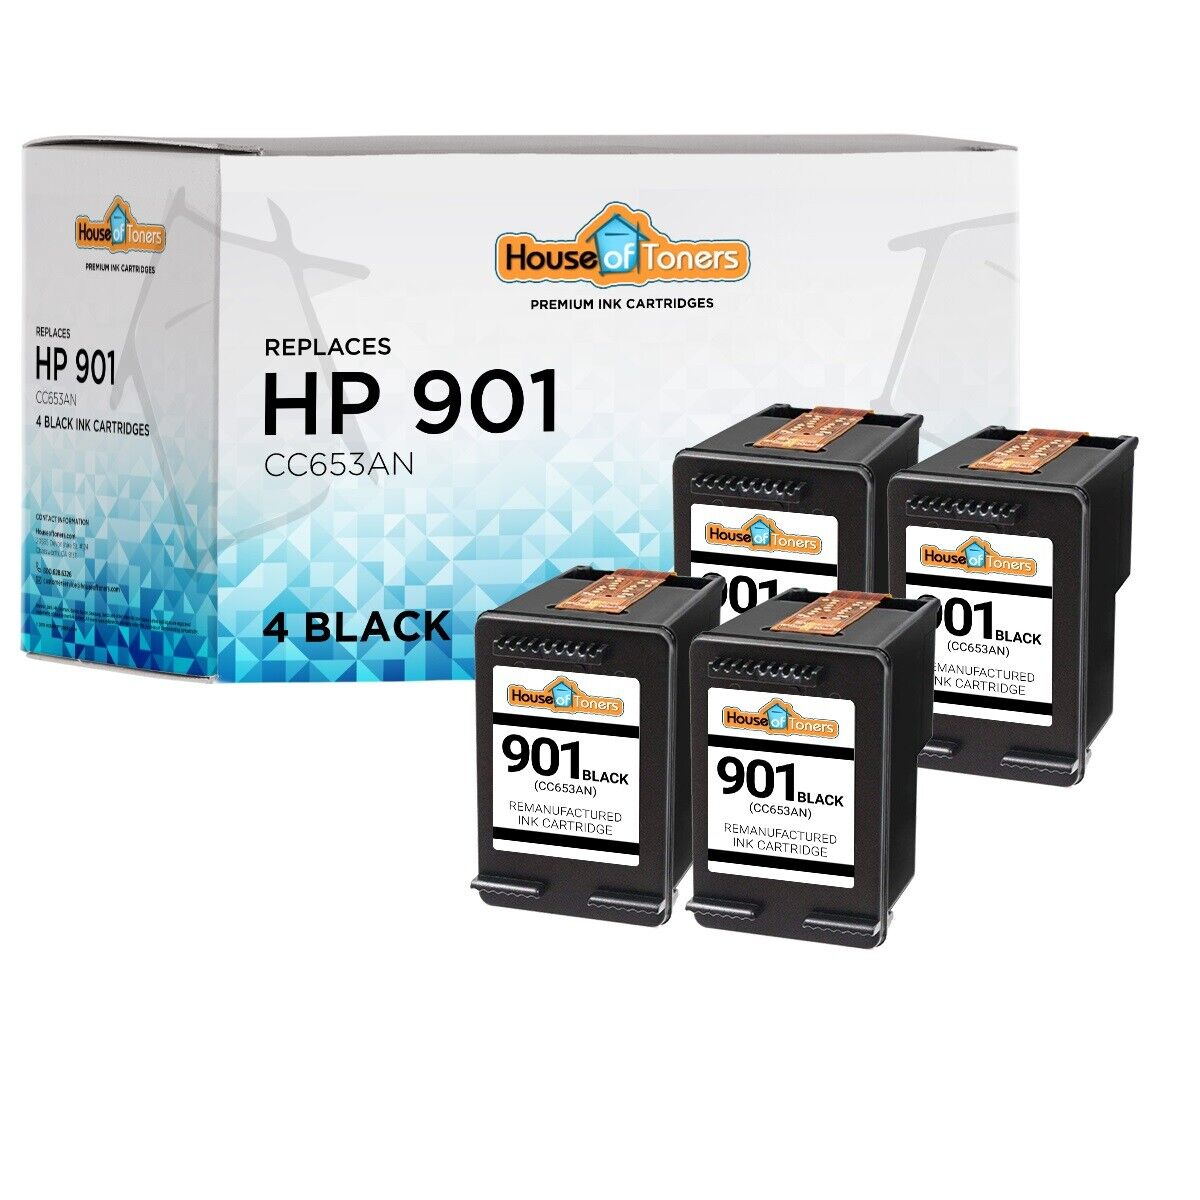 4PK for HP 901 Black Ink Cartridges for HP Officejet J4660 J4680 4500